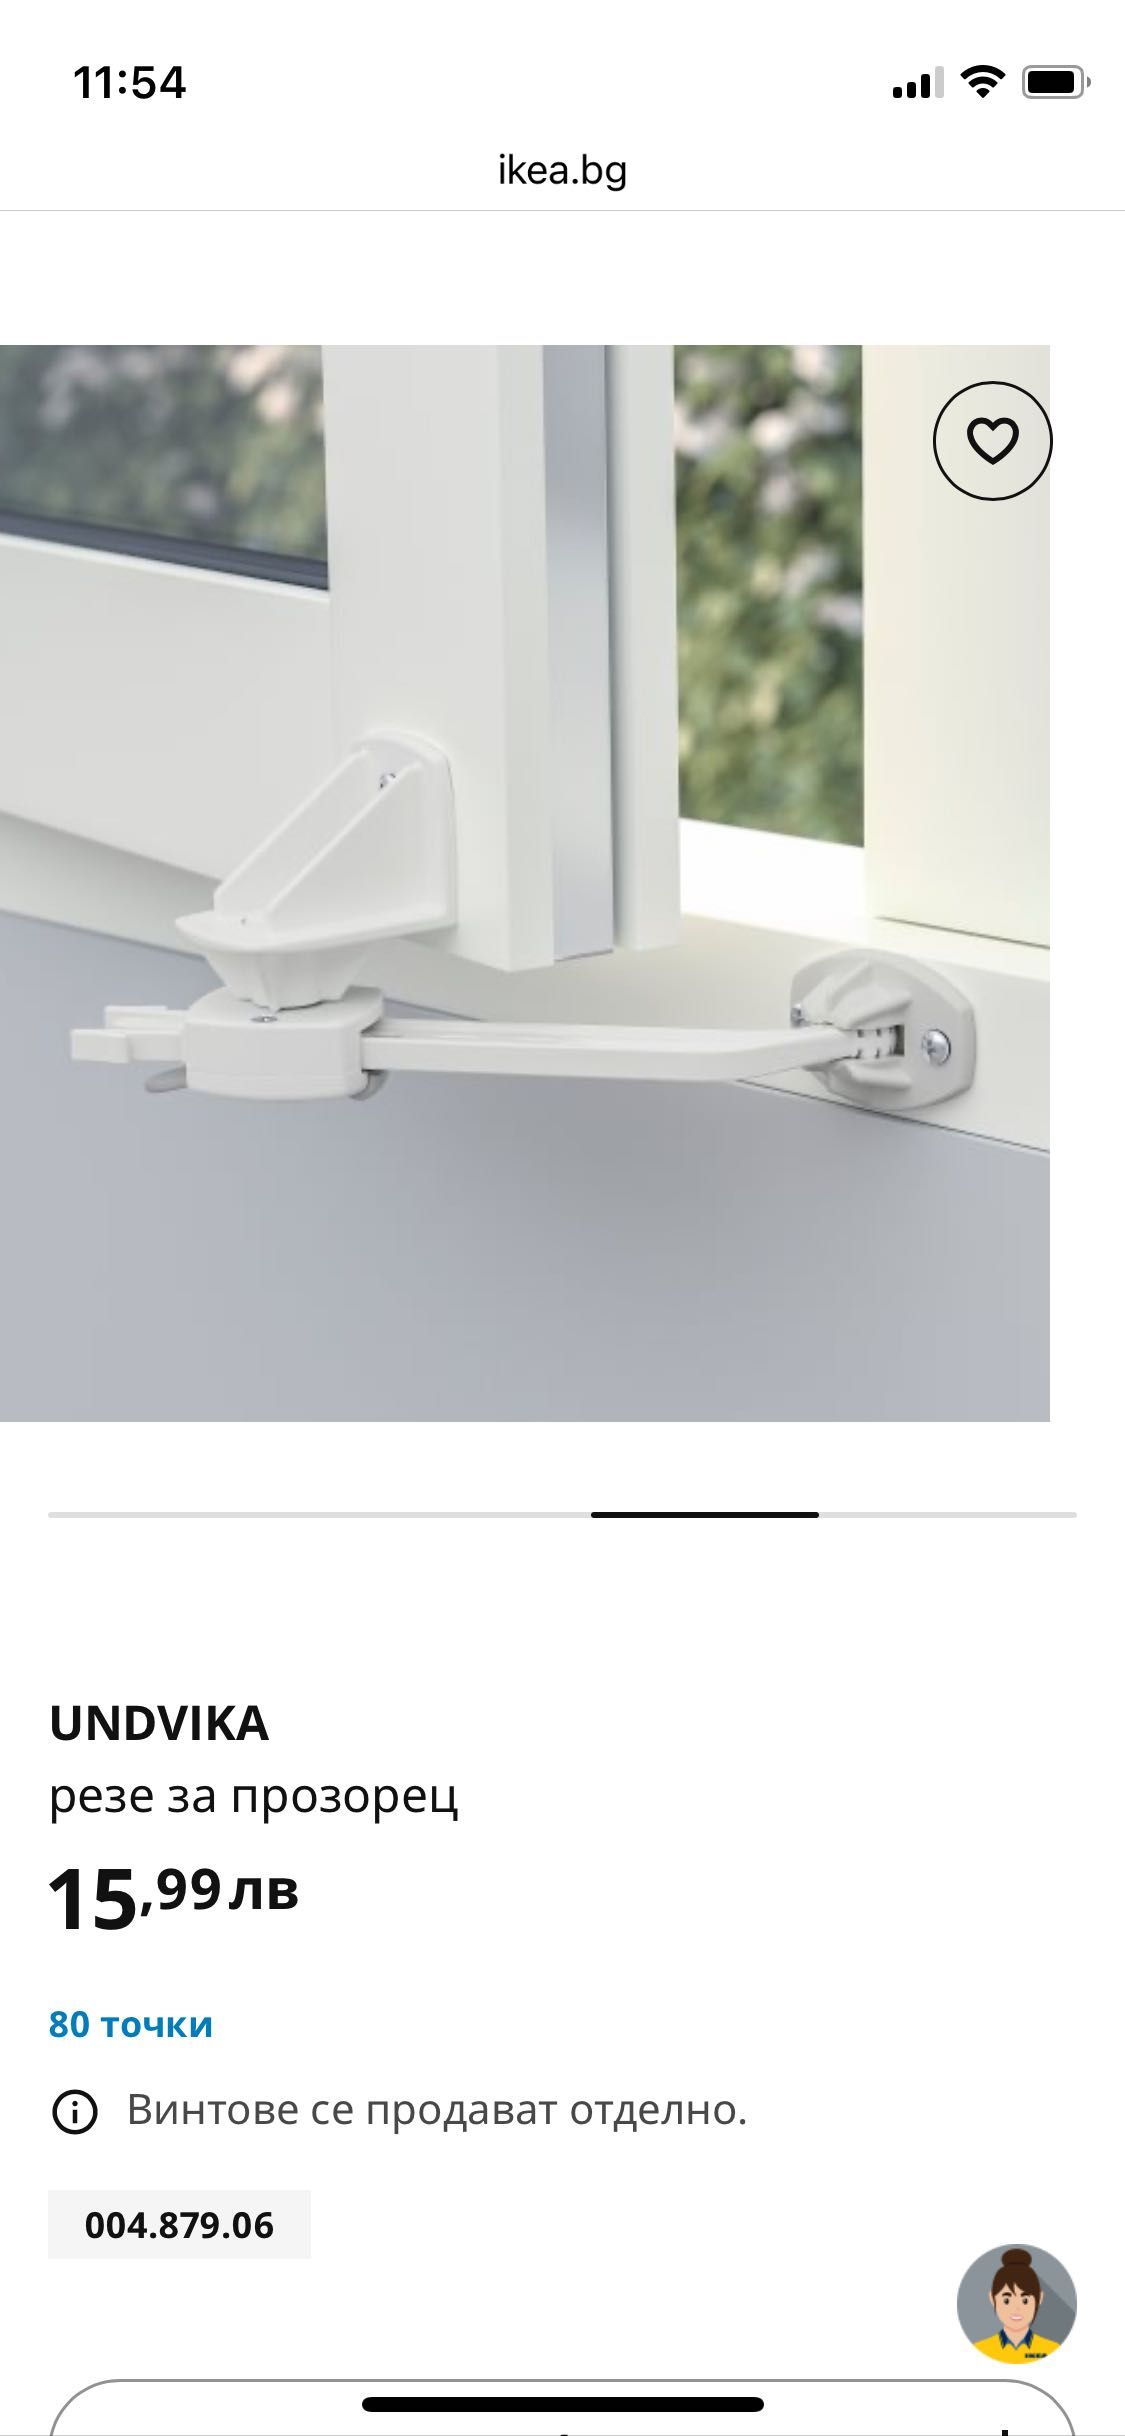 IKEA UNDVIKA резе за прозорец - безопасност на детето